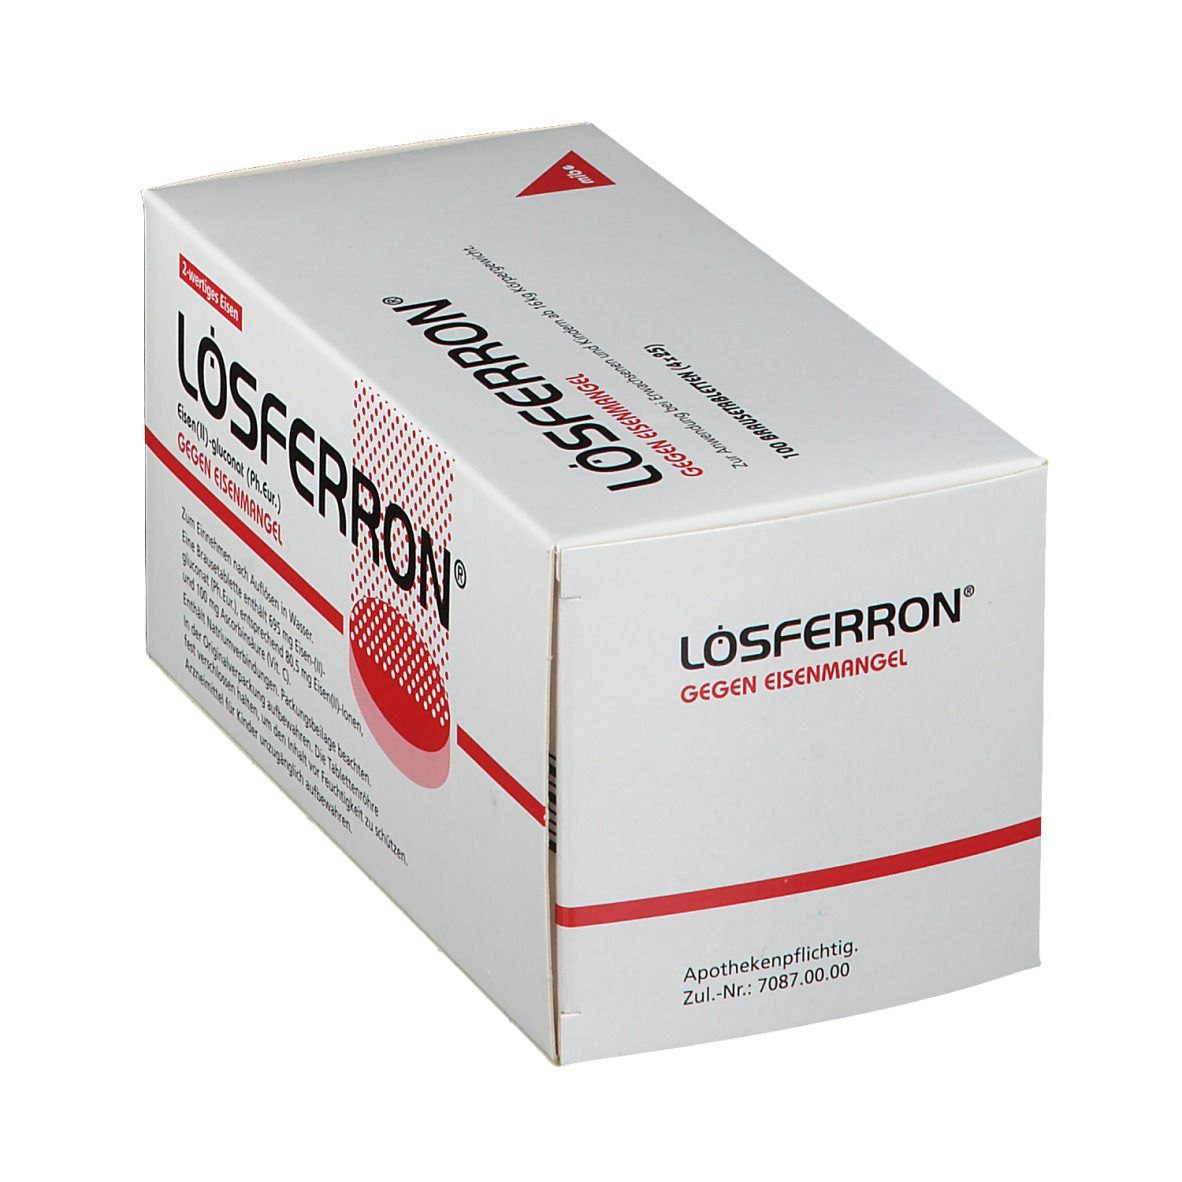 Lösferron® 80,5 mg Brausetabletten